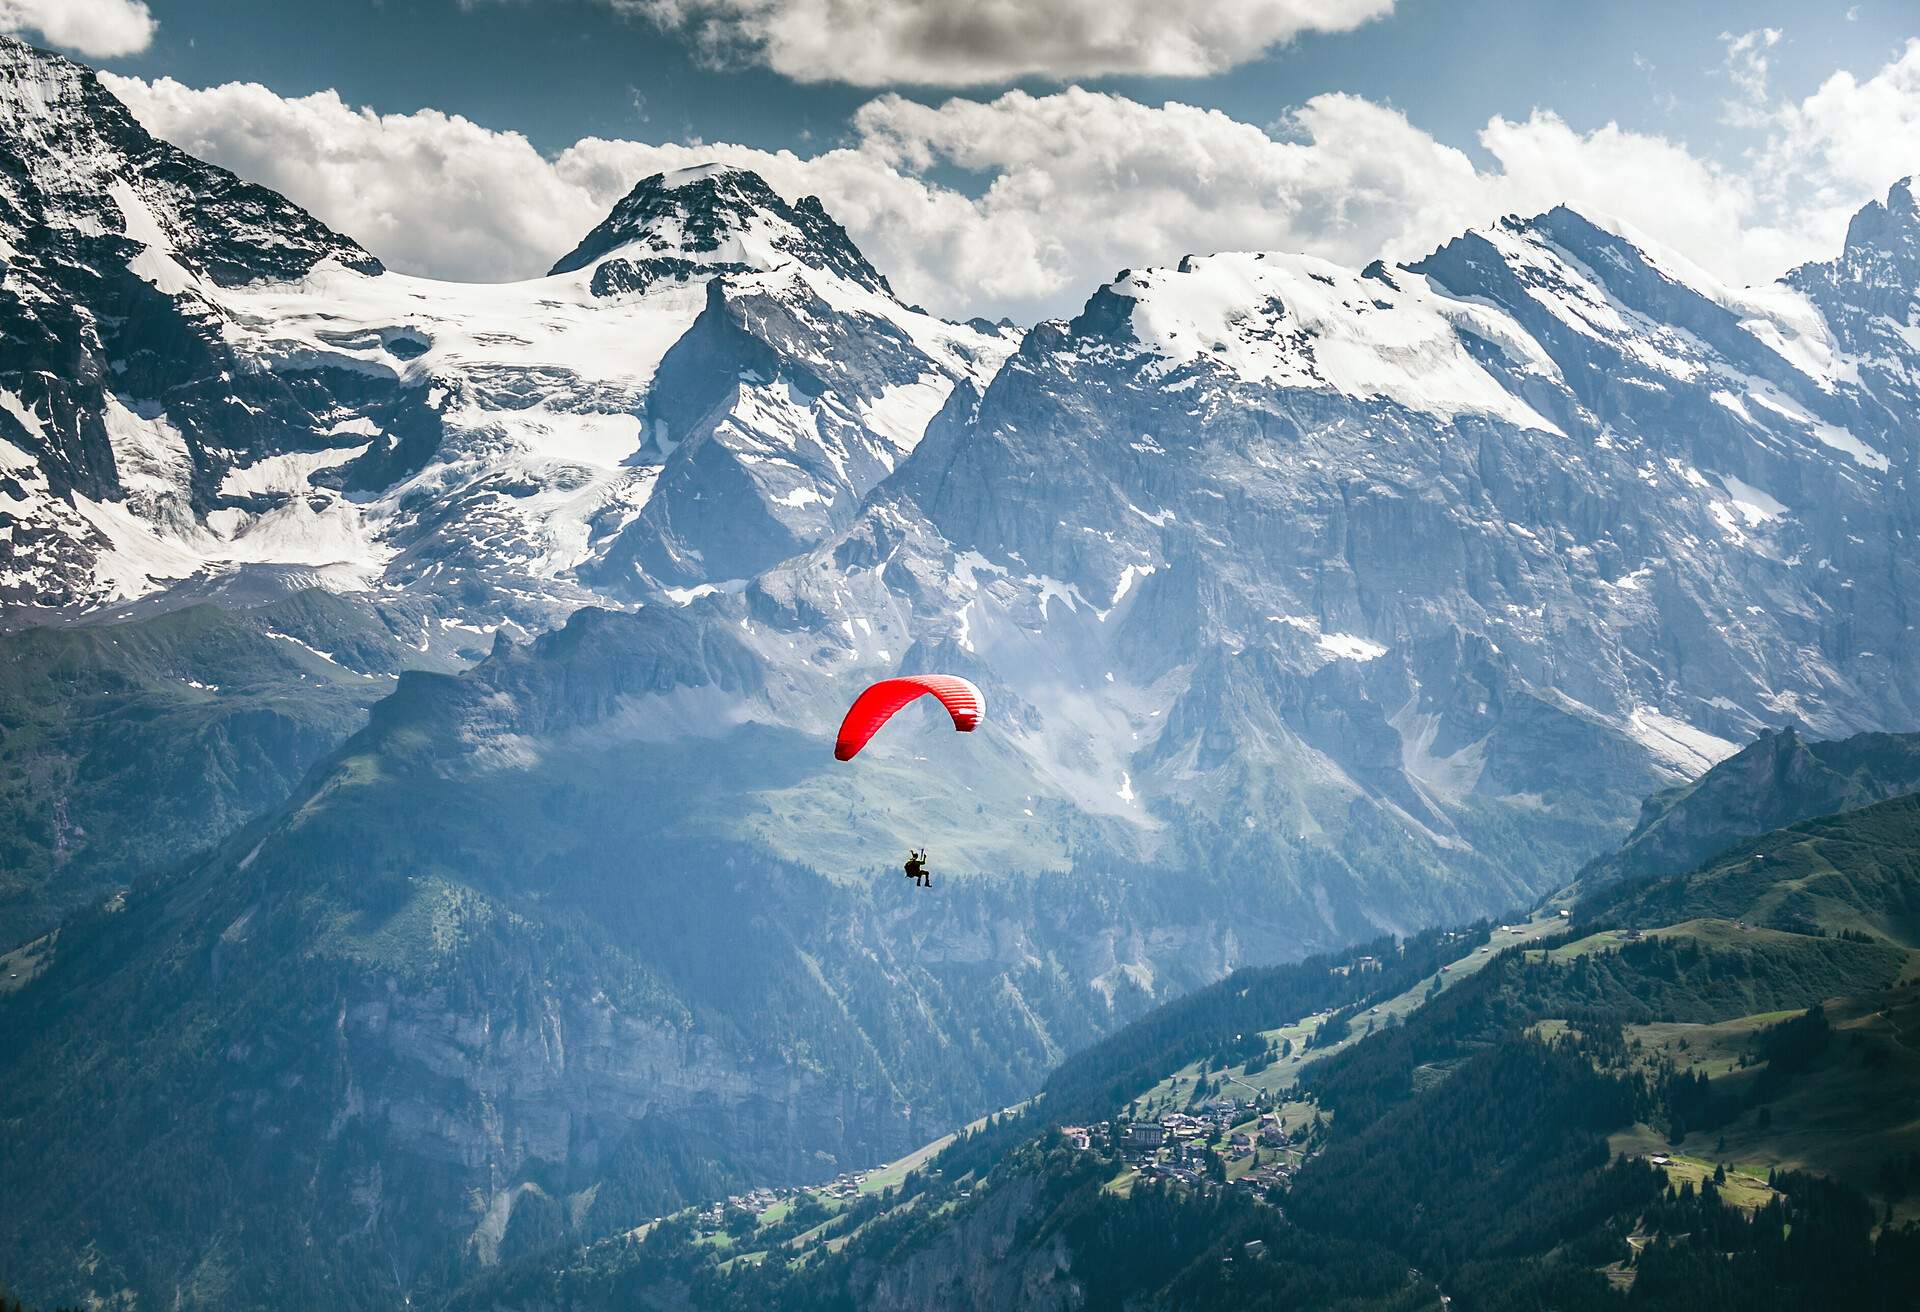 Paragliding over Swiss Alps at Männlichen in Wengen.